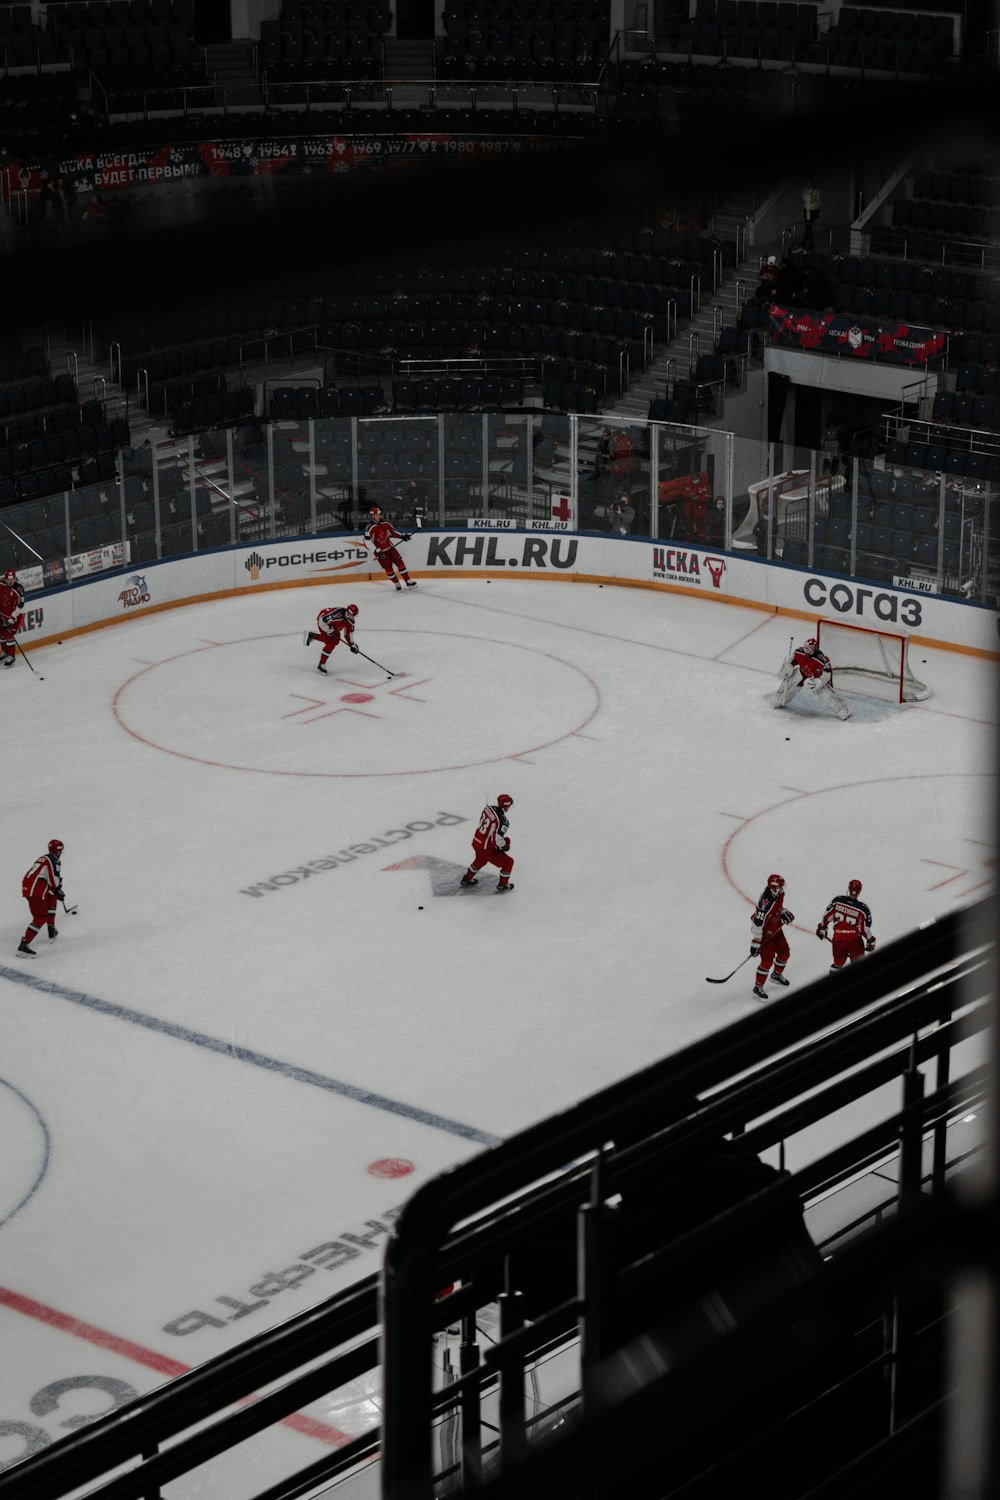 Gente jugando al hockey sobre hielo en un estadio de hielo